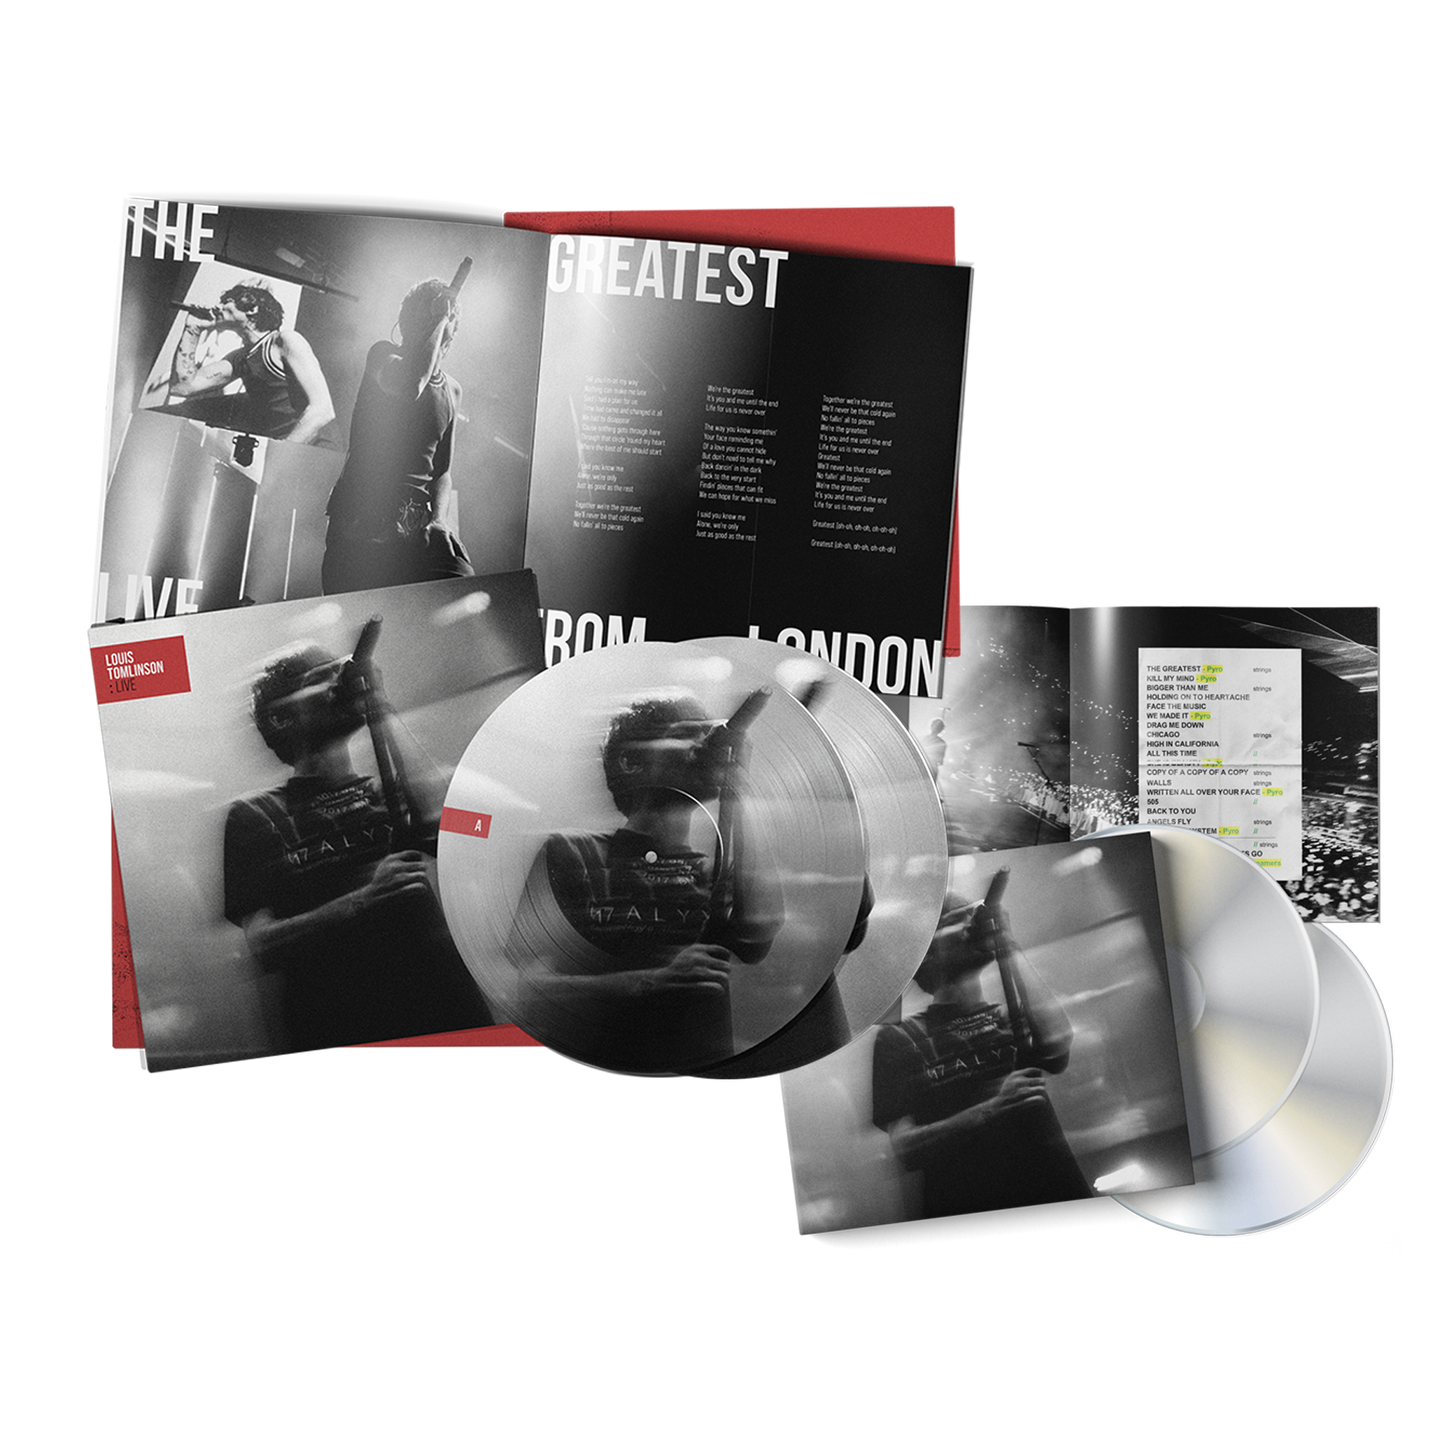 Louis Tomlinson : Live | Double CD + Double Picture Disc LP + Download